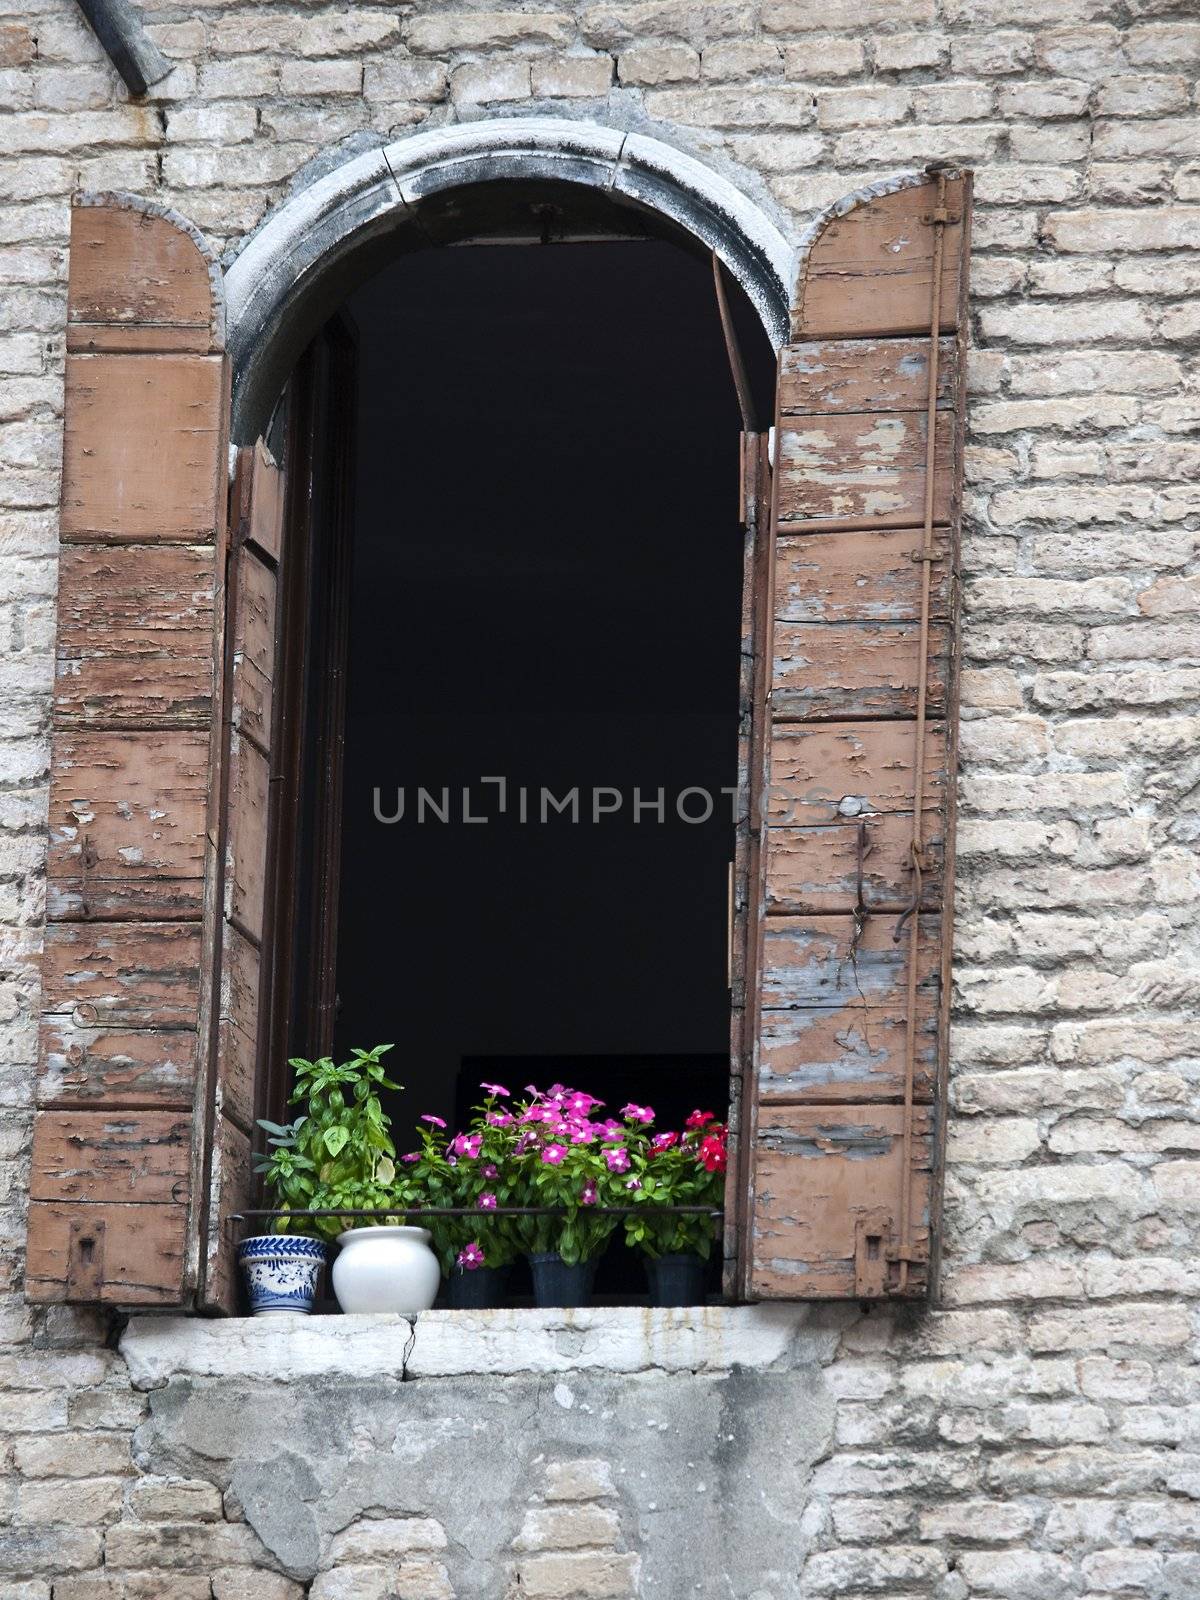 Piazza Campo dei Frari. Typical vetetian window - Venice Italy